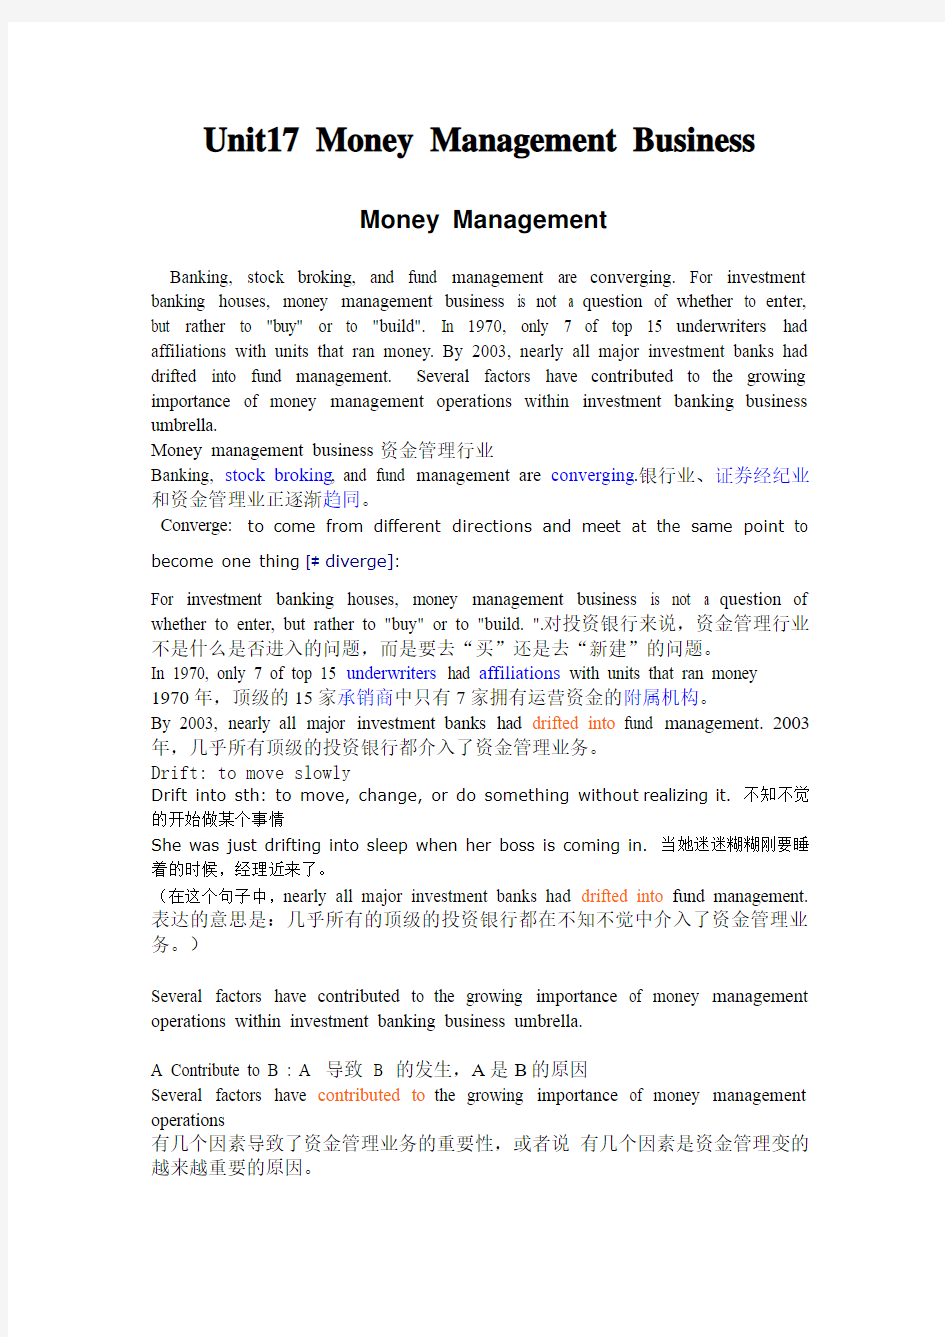 Unit 17 Money Management Business